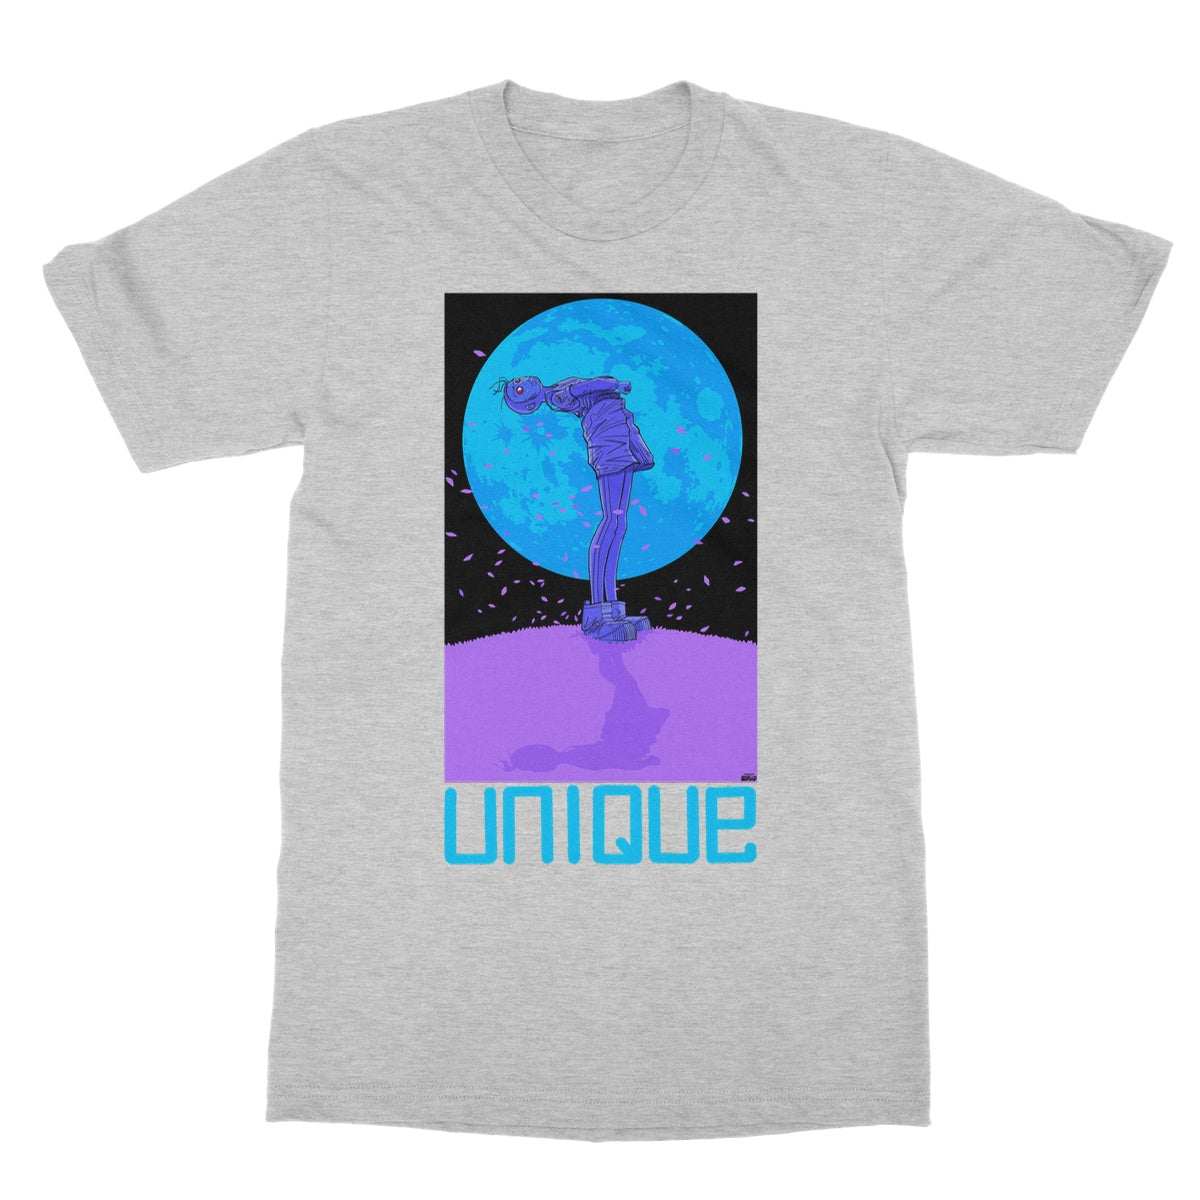 Unique 'Moon Child' Light T-Shirt Collection